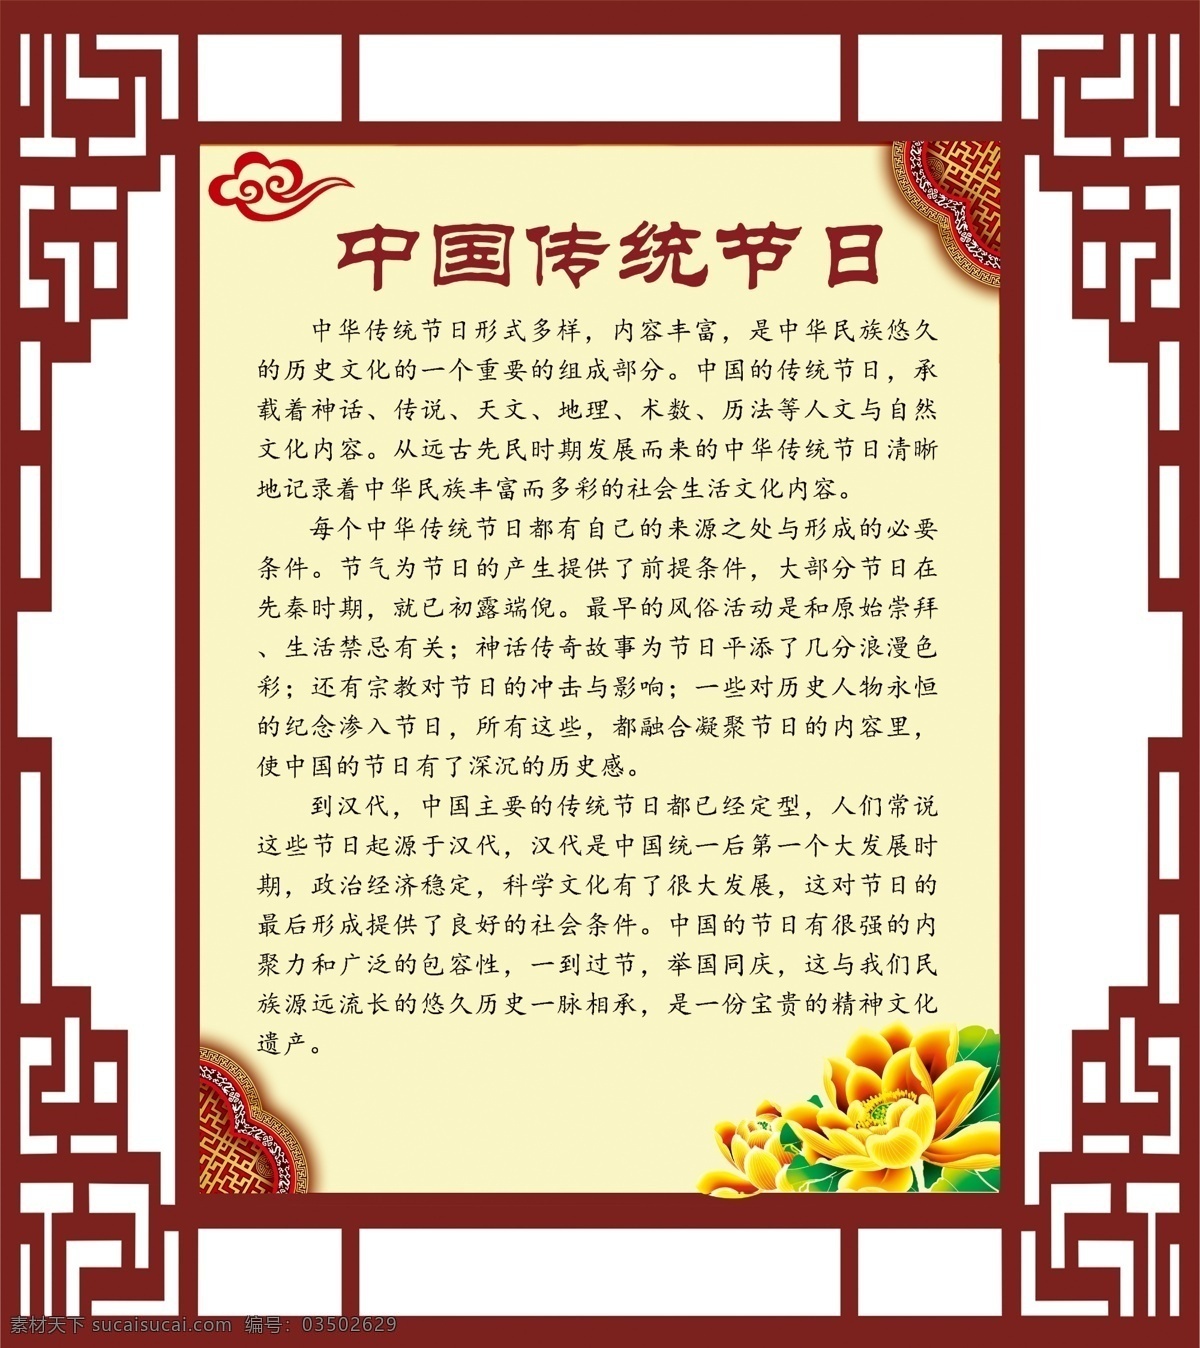 中国 传统节日 文字简介 古典中国风